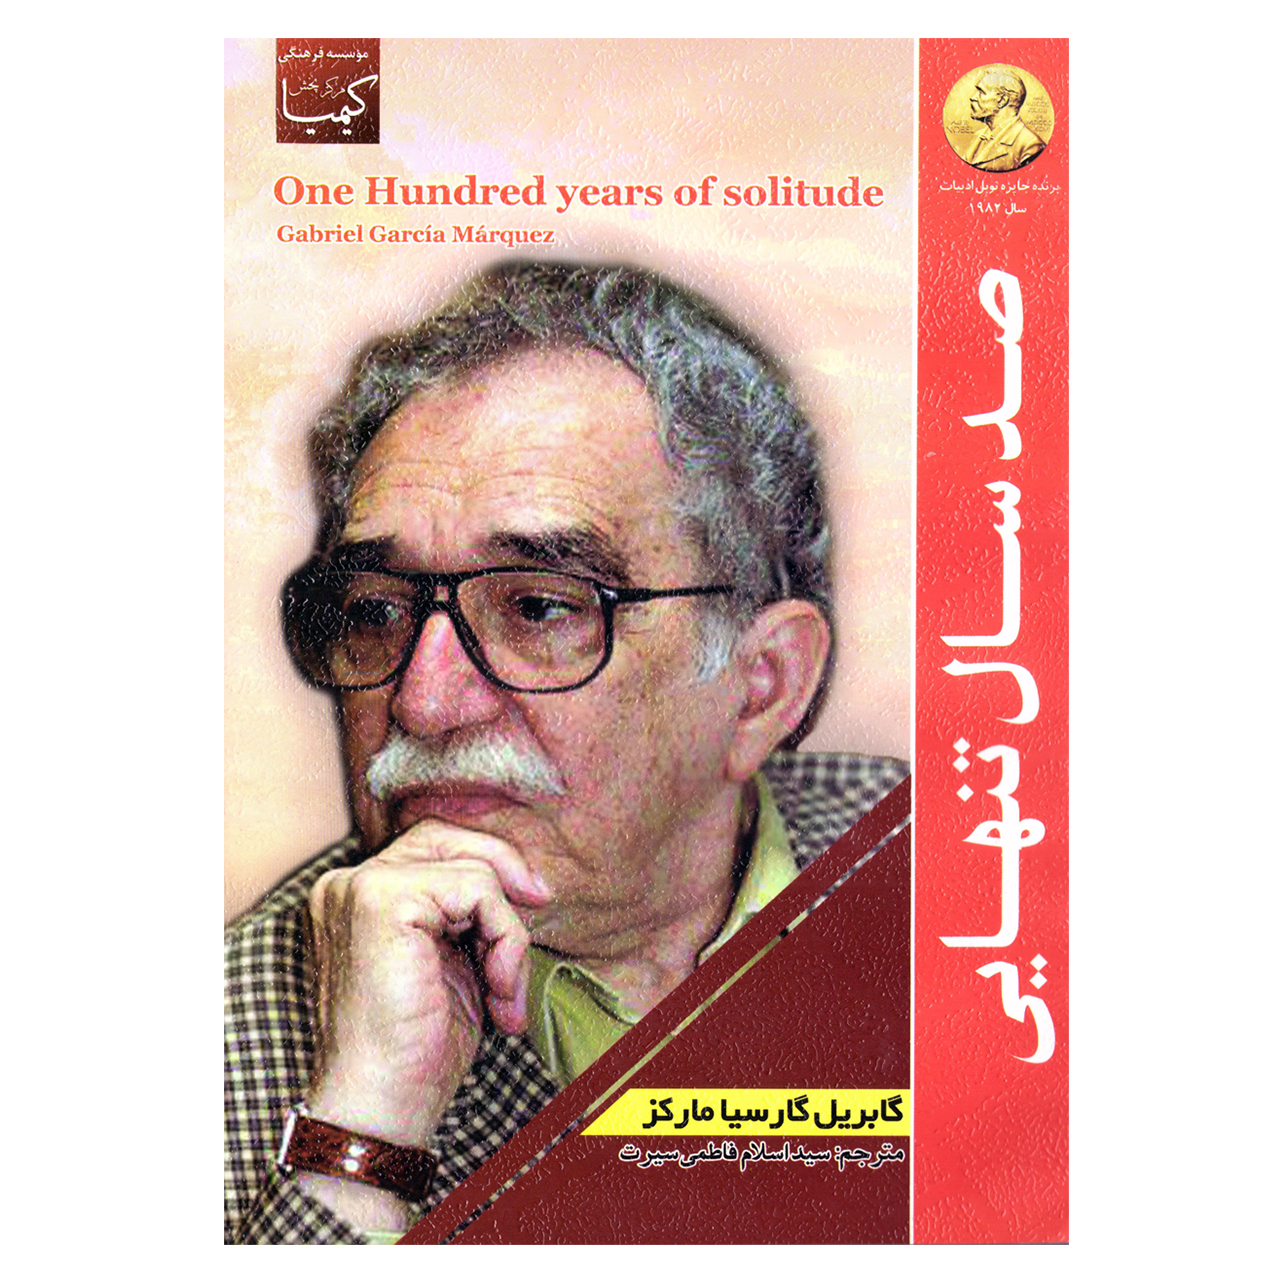 کتاب صد سال تنهایی (صدسال تنهایی ) اثر گابریل گارسیا مارکز نشر عصر جوان 100